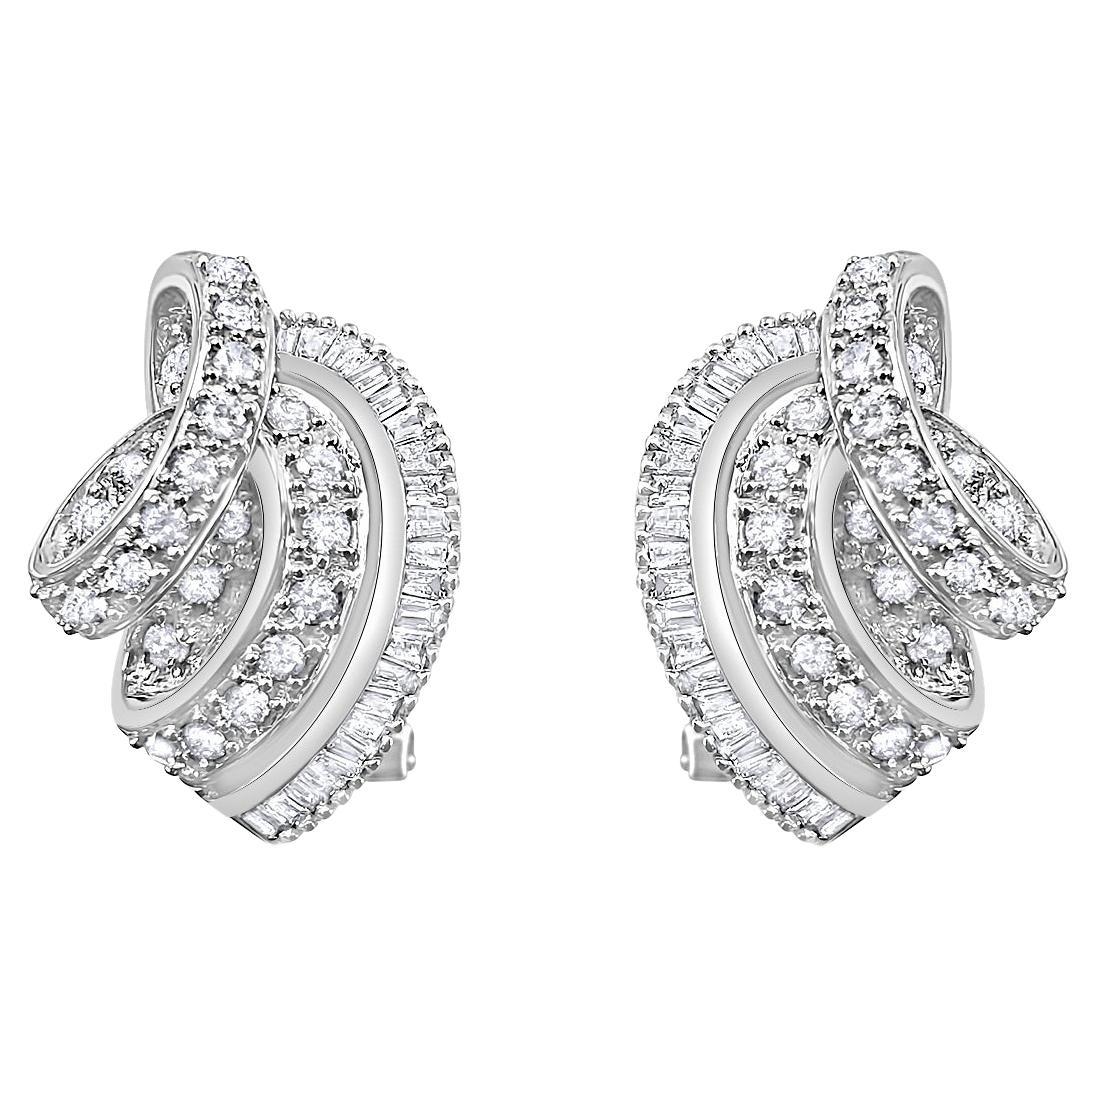 Pave Diamond Baguette Diamond Earrings 1.22cttw 14k White Gold